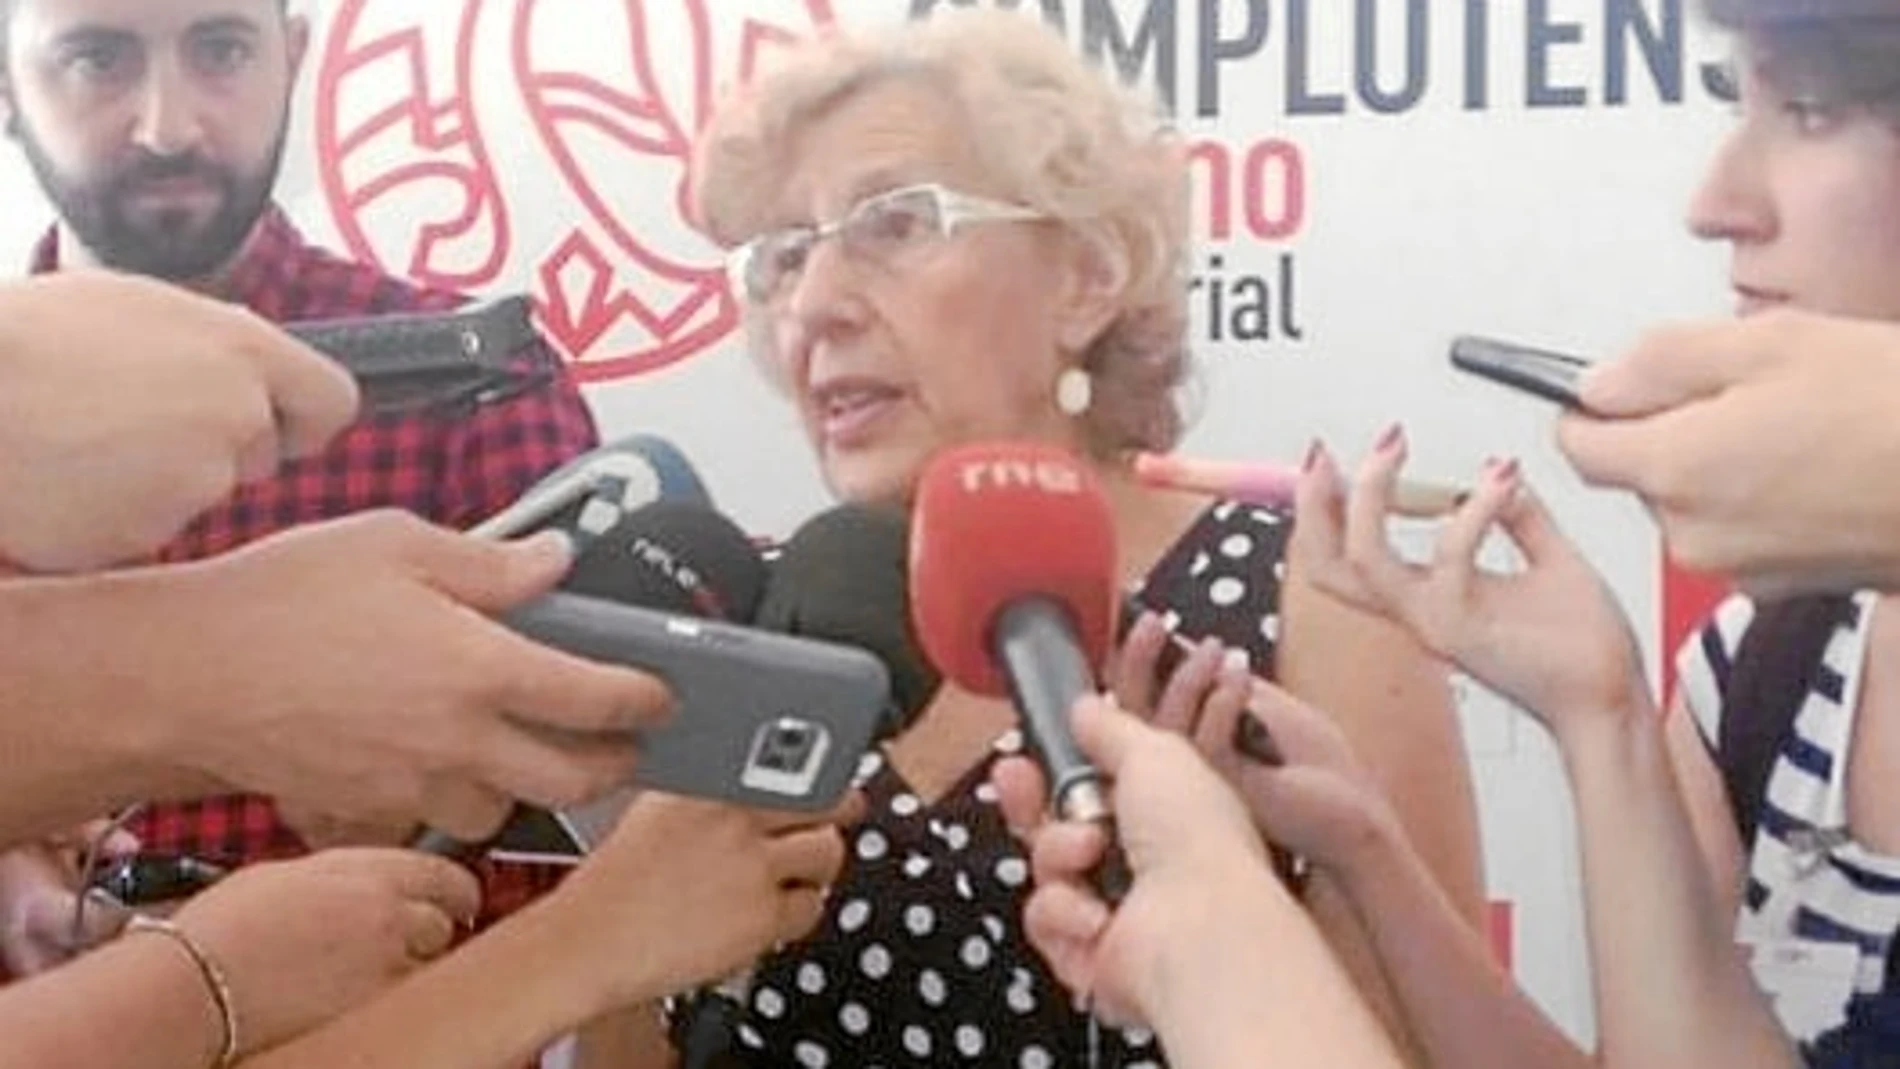 La alcaldesa de Madrid, Manuela Carmena, participó ayer en los Cursos de Verano de la Complutense